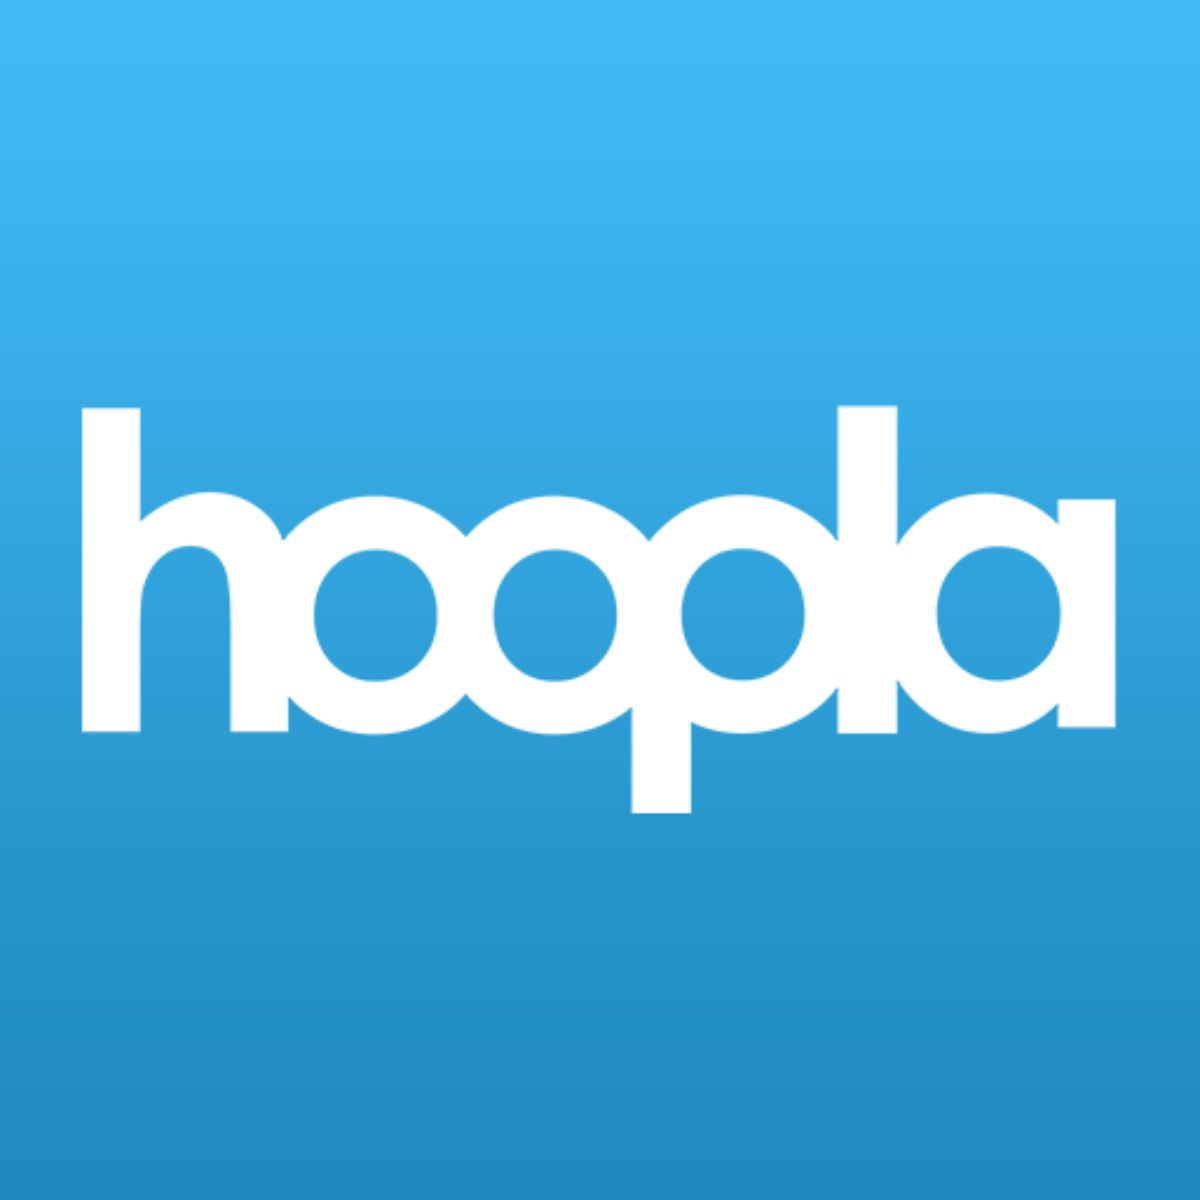 Hoopla app logo.